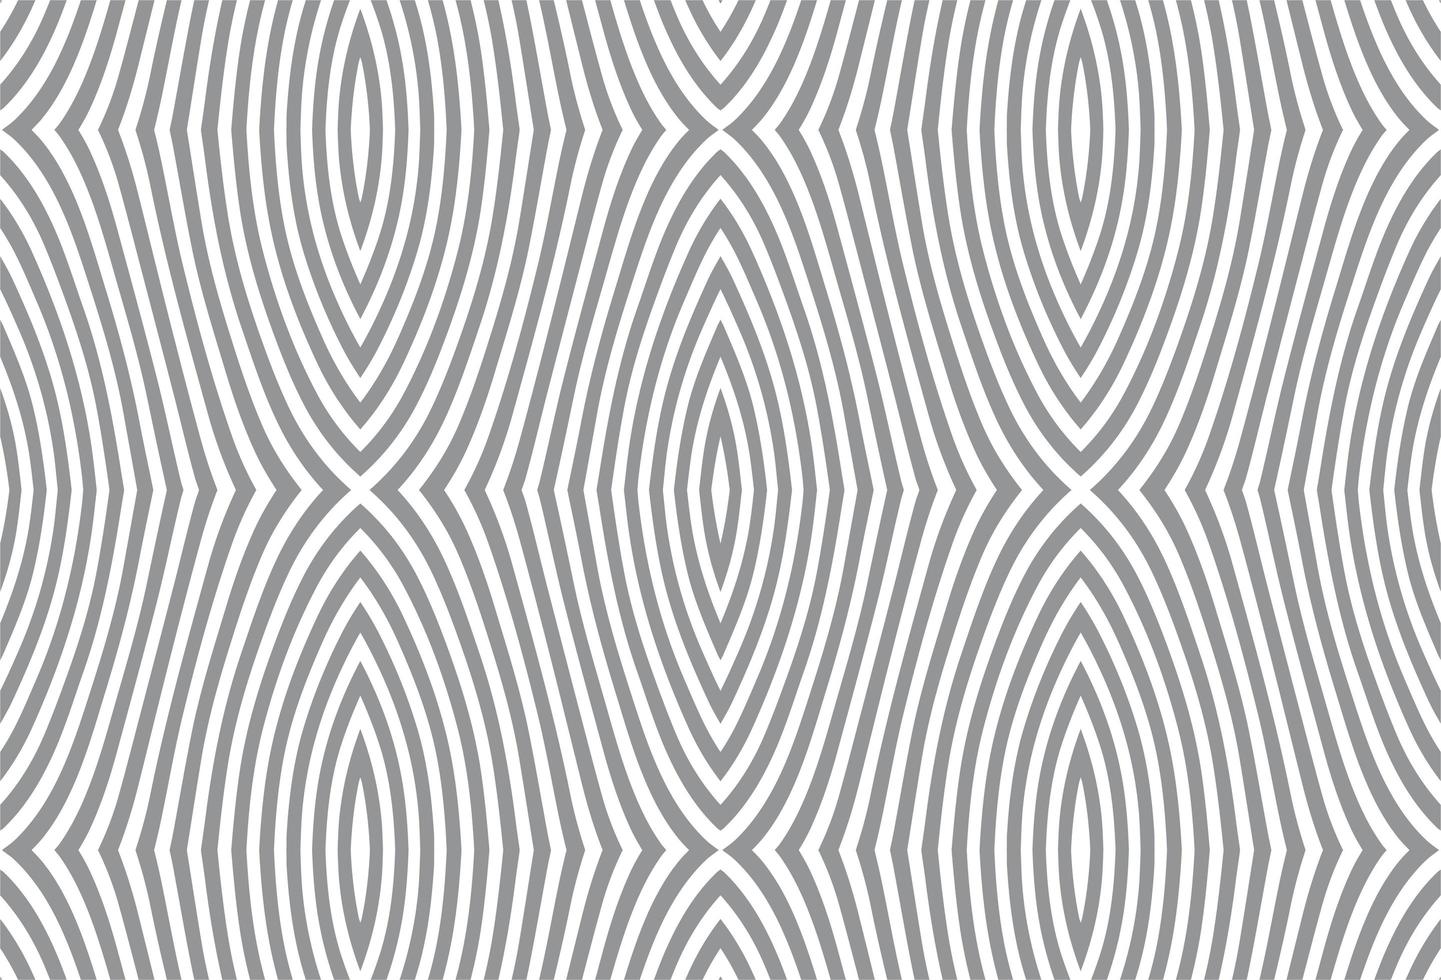 abstract geometrisch naadloos patroon vector